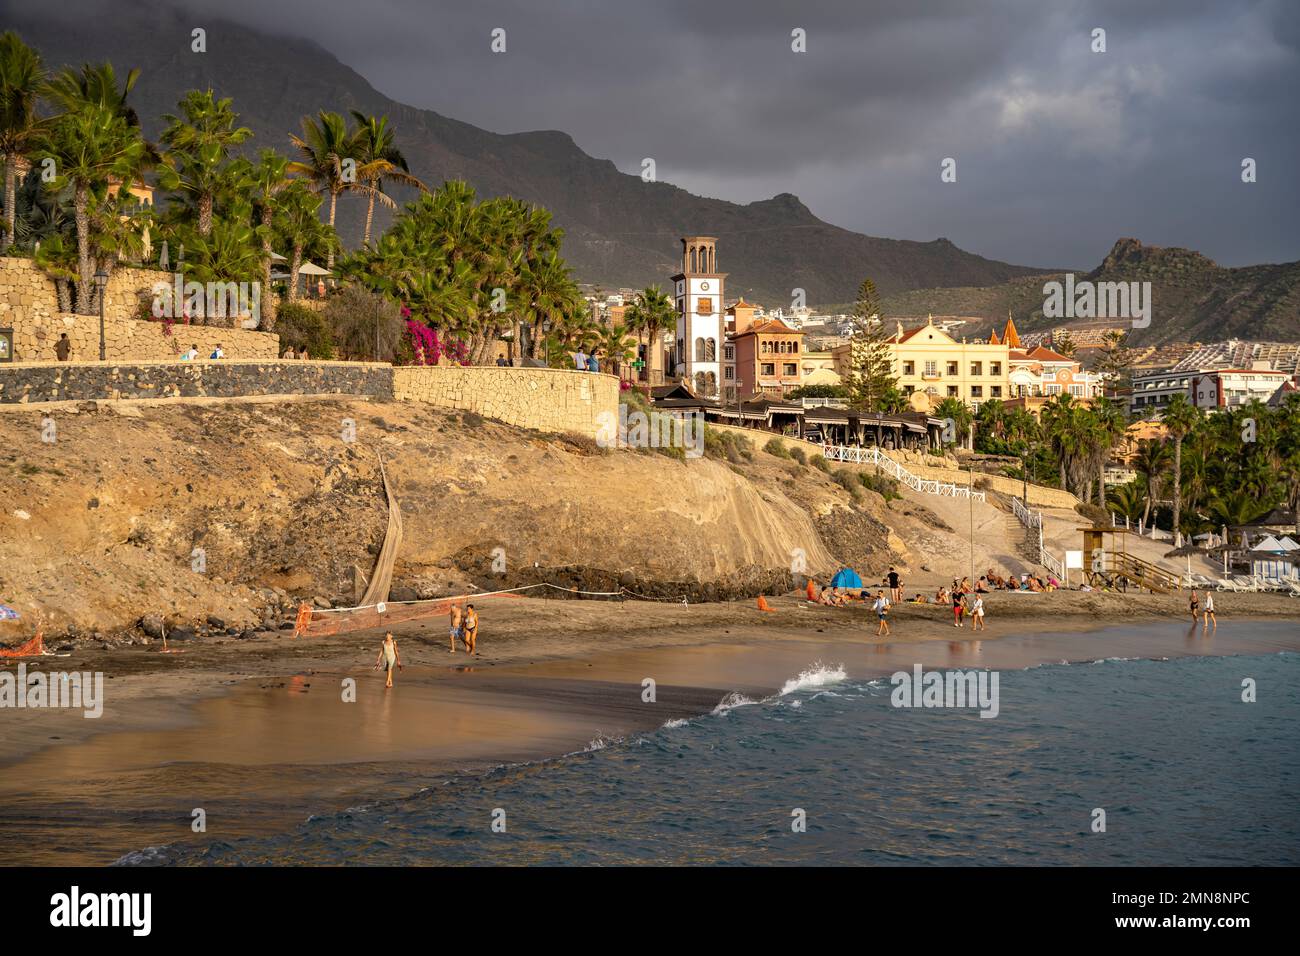 Der Strand Playa del Duque, Costa Adeje,  Teneriffa, Kanarische Inseln, Spanien |  Playa del Duque beach, Costa Adeje,   Tenerife, Canary Islands, Spa Stock Photo